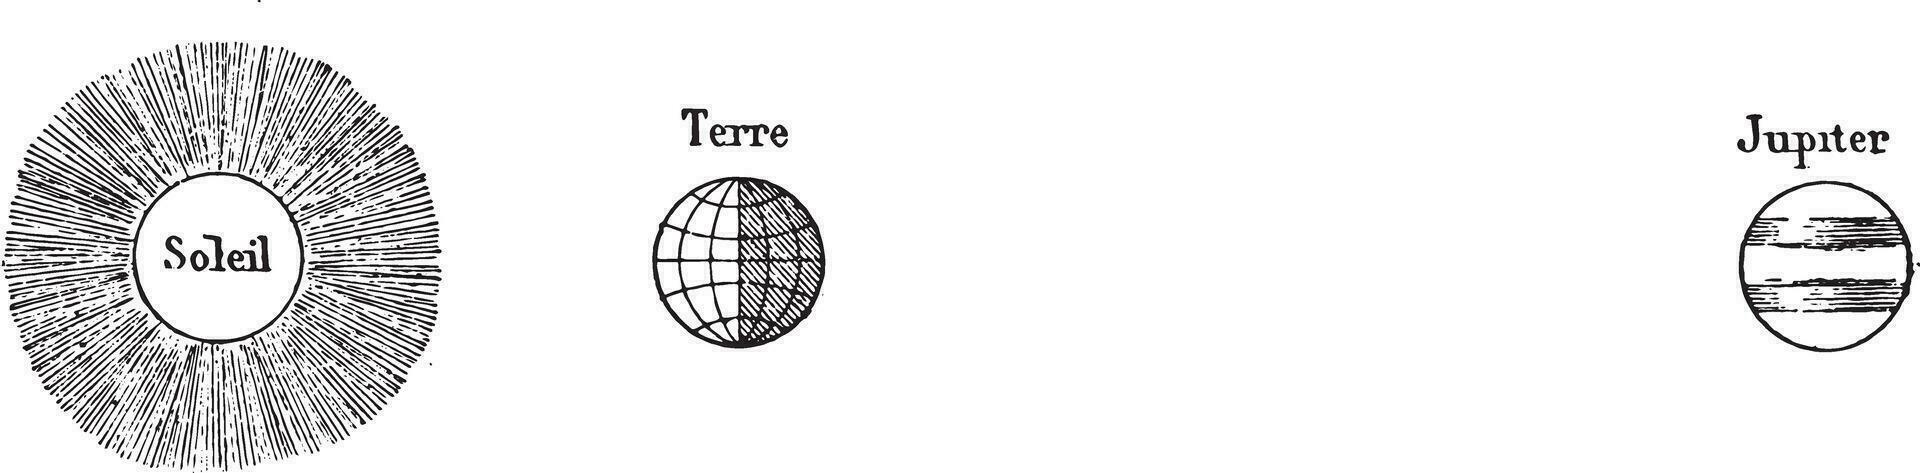 oposición, sitio de Júpiter en noviembre 1869 y 13 diciembre 1870, Clásico grabado. vector